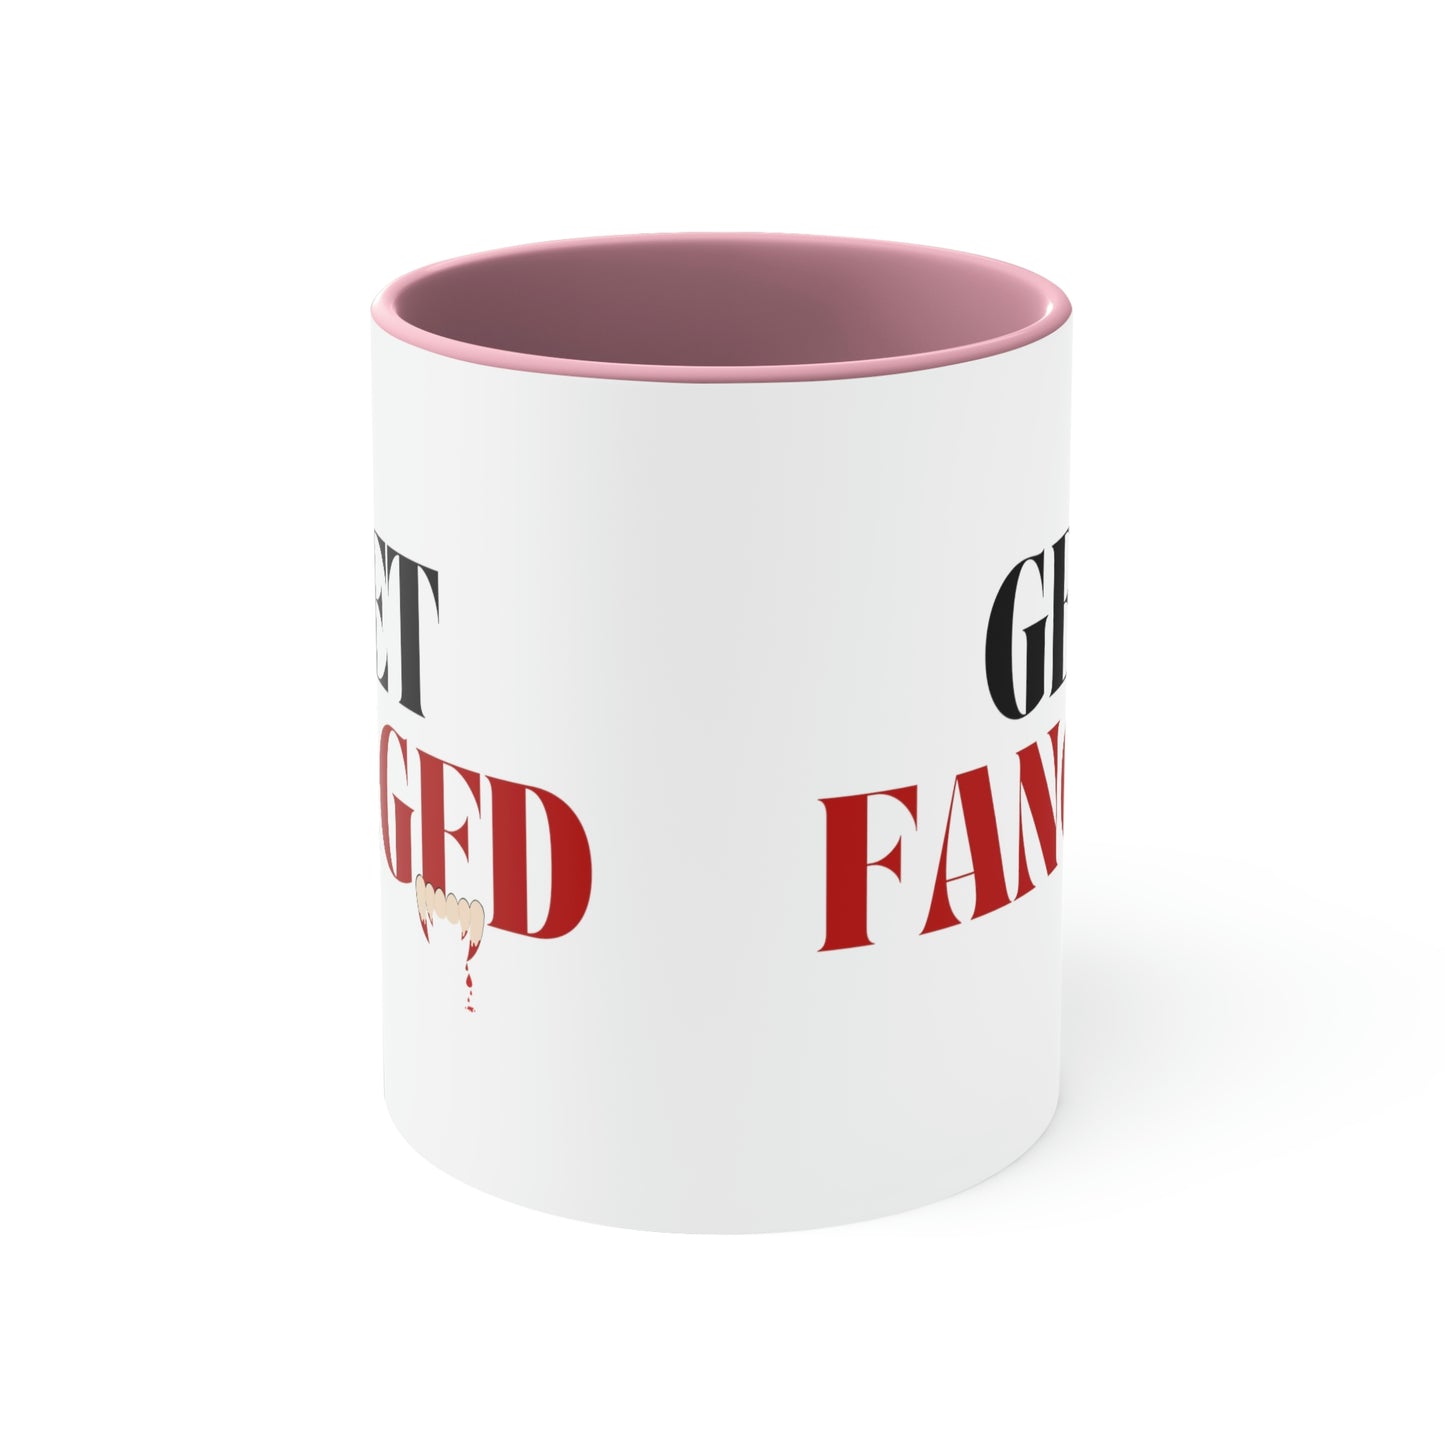 Get Fanged Red Mug